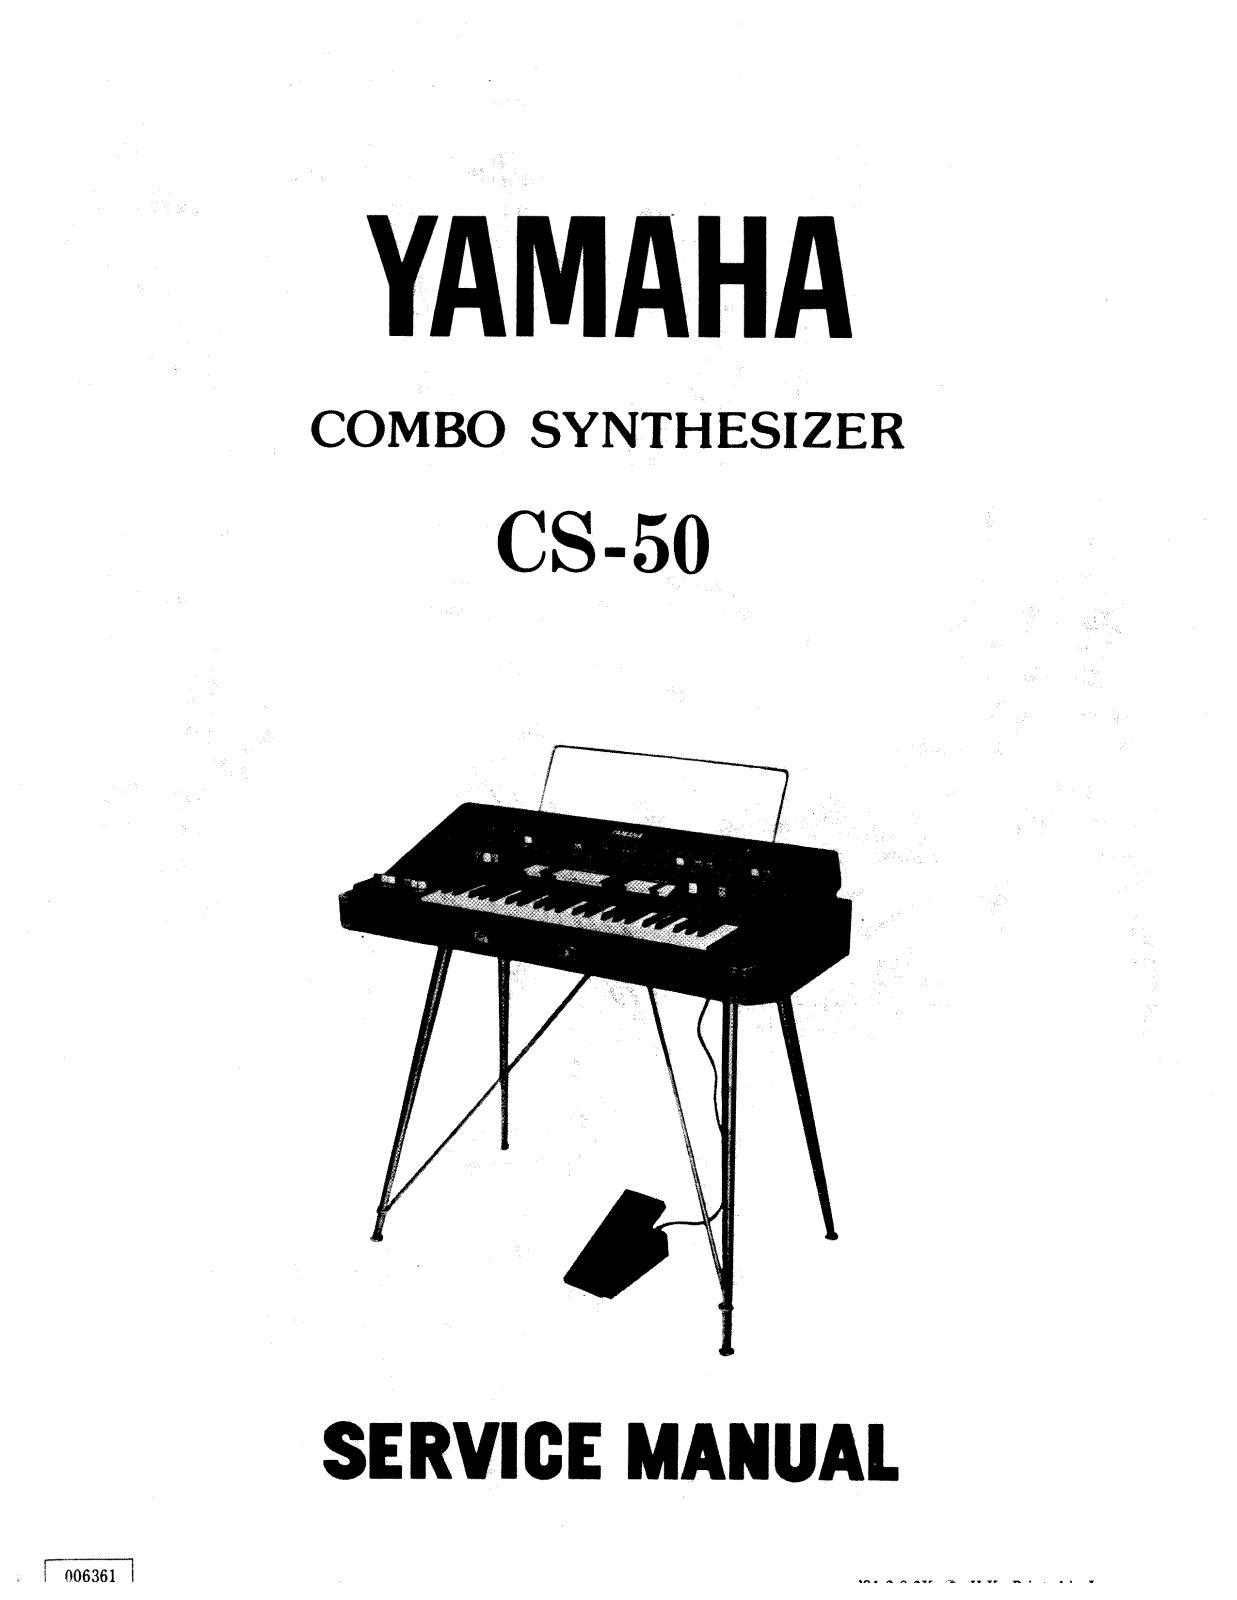 Yamaha CS-50 Service Manual